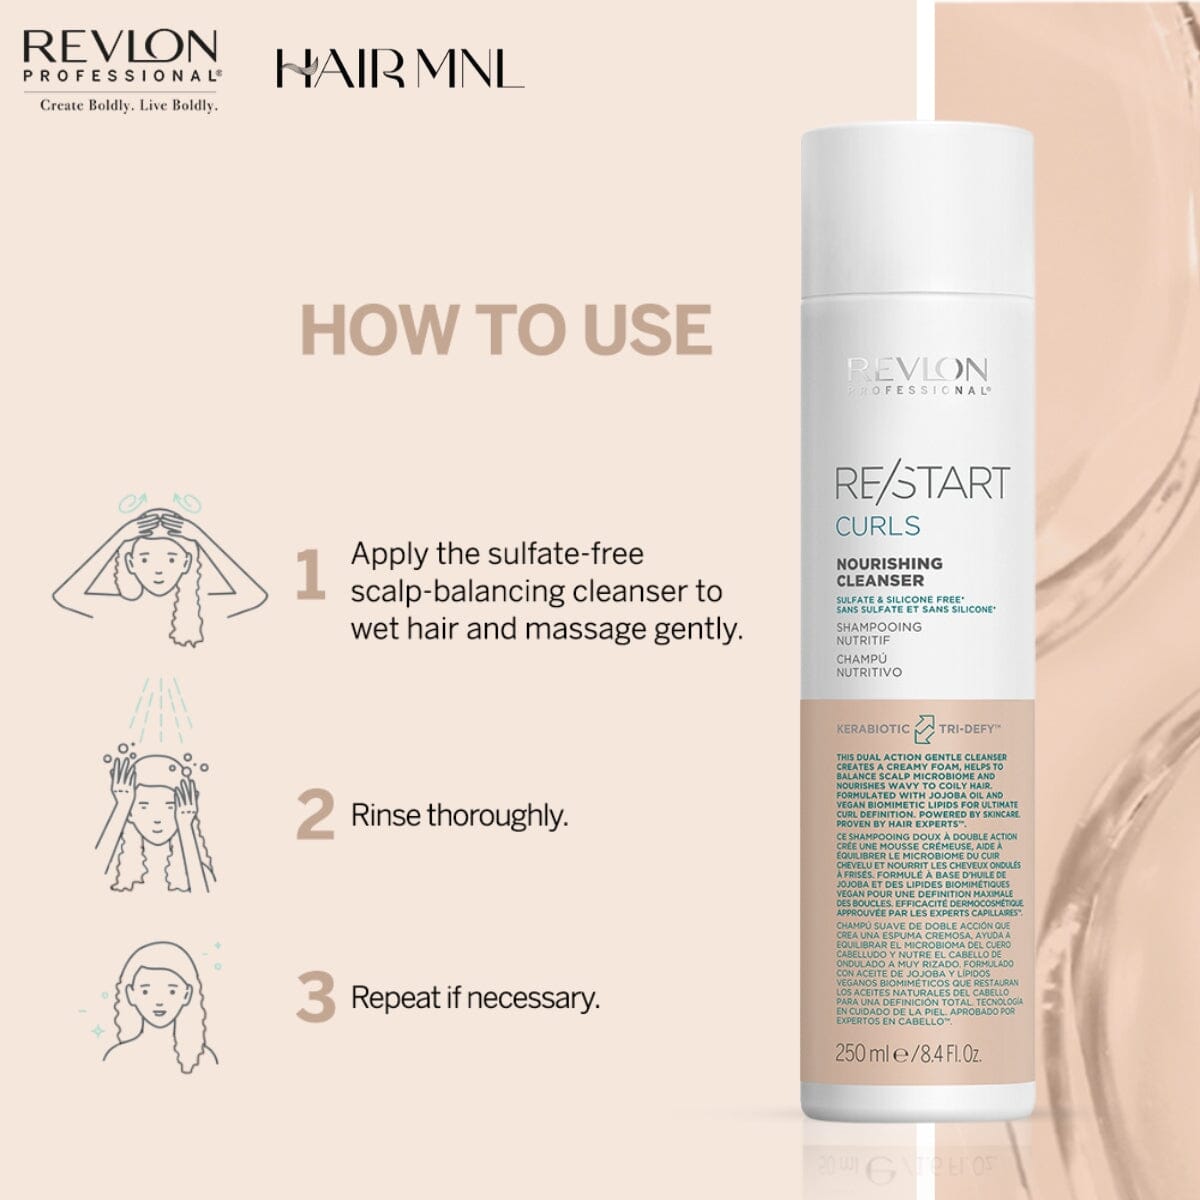 HairMNL Revlon - - HairMNL Curls Pro Nourishing 250ml Cleanser ReStart